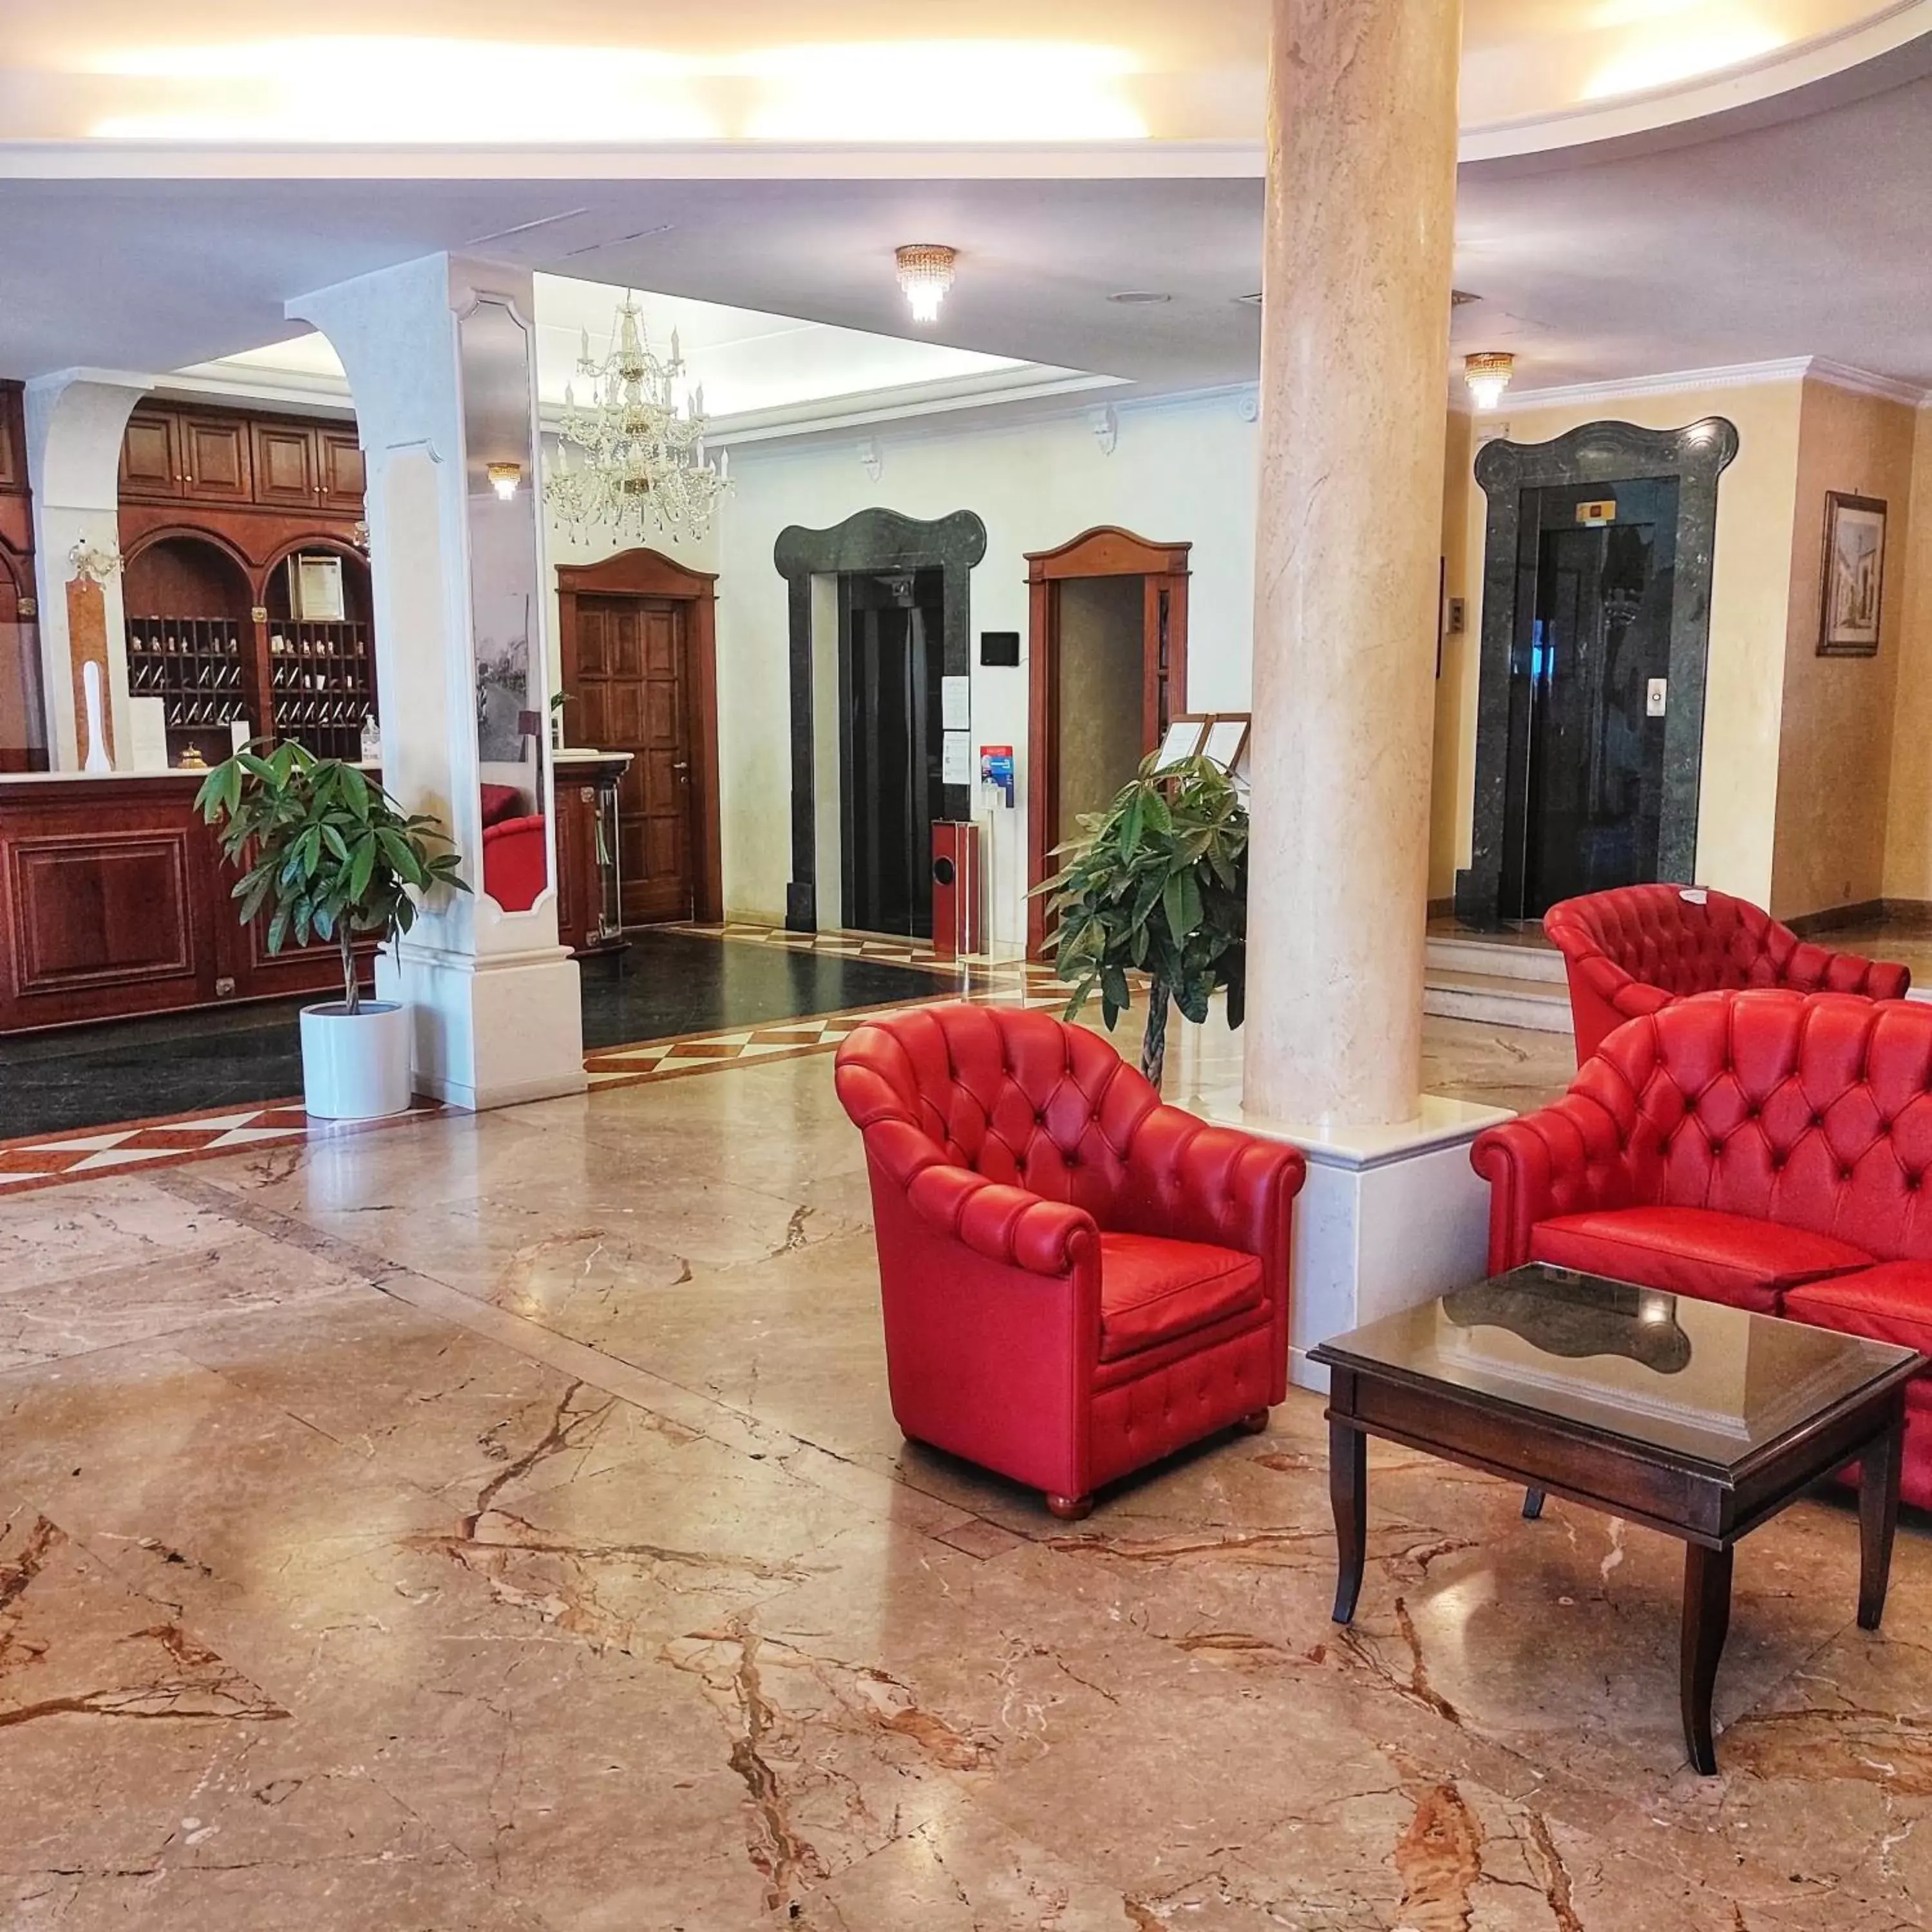 Lobby or reception, Lobby/Reception in Mariano IV Palace Hotel